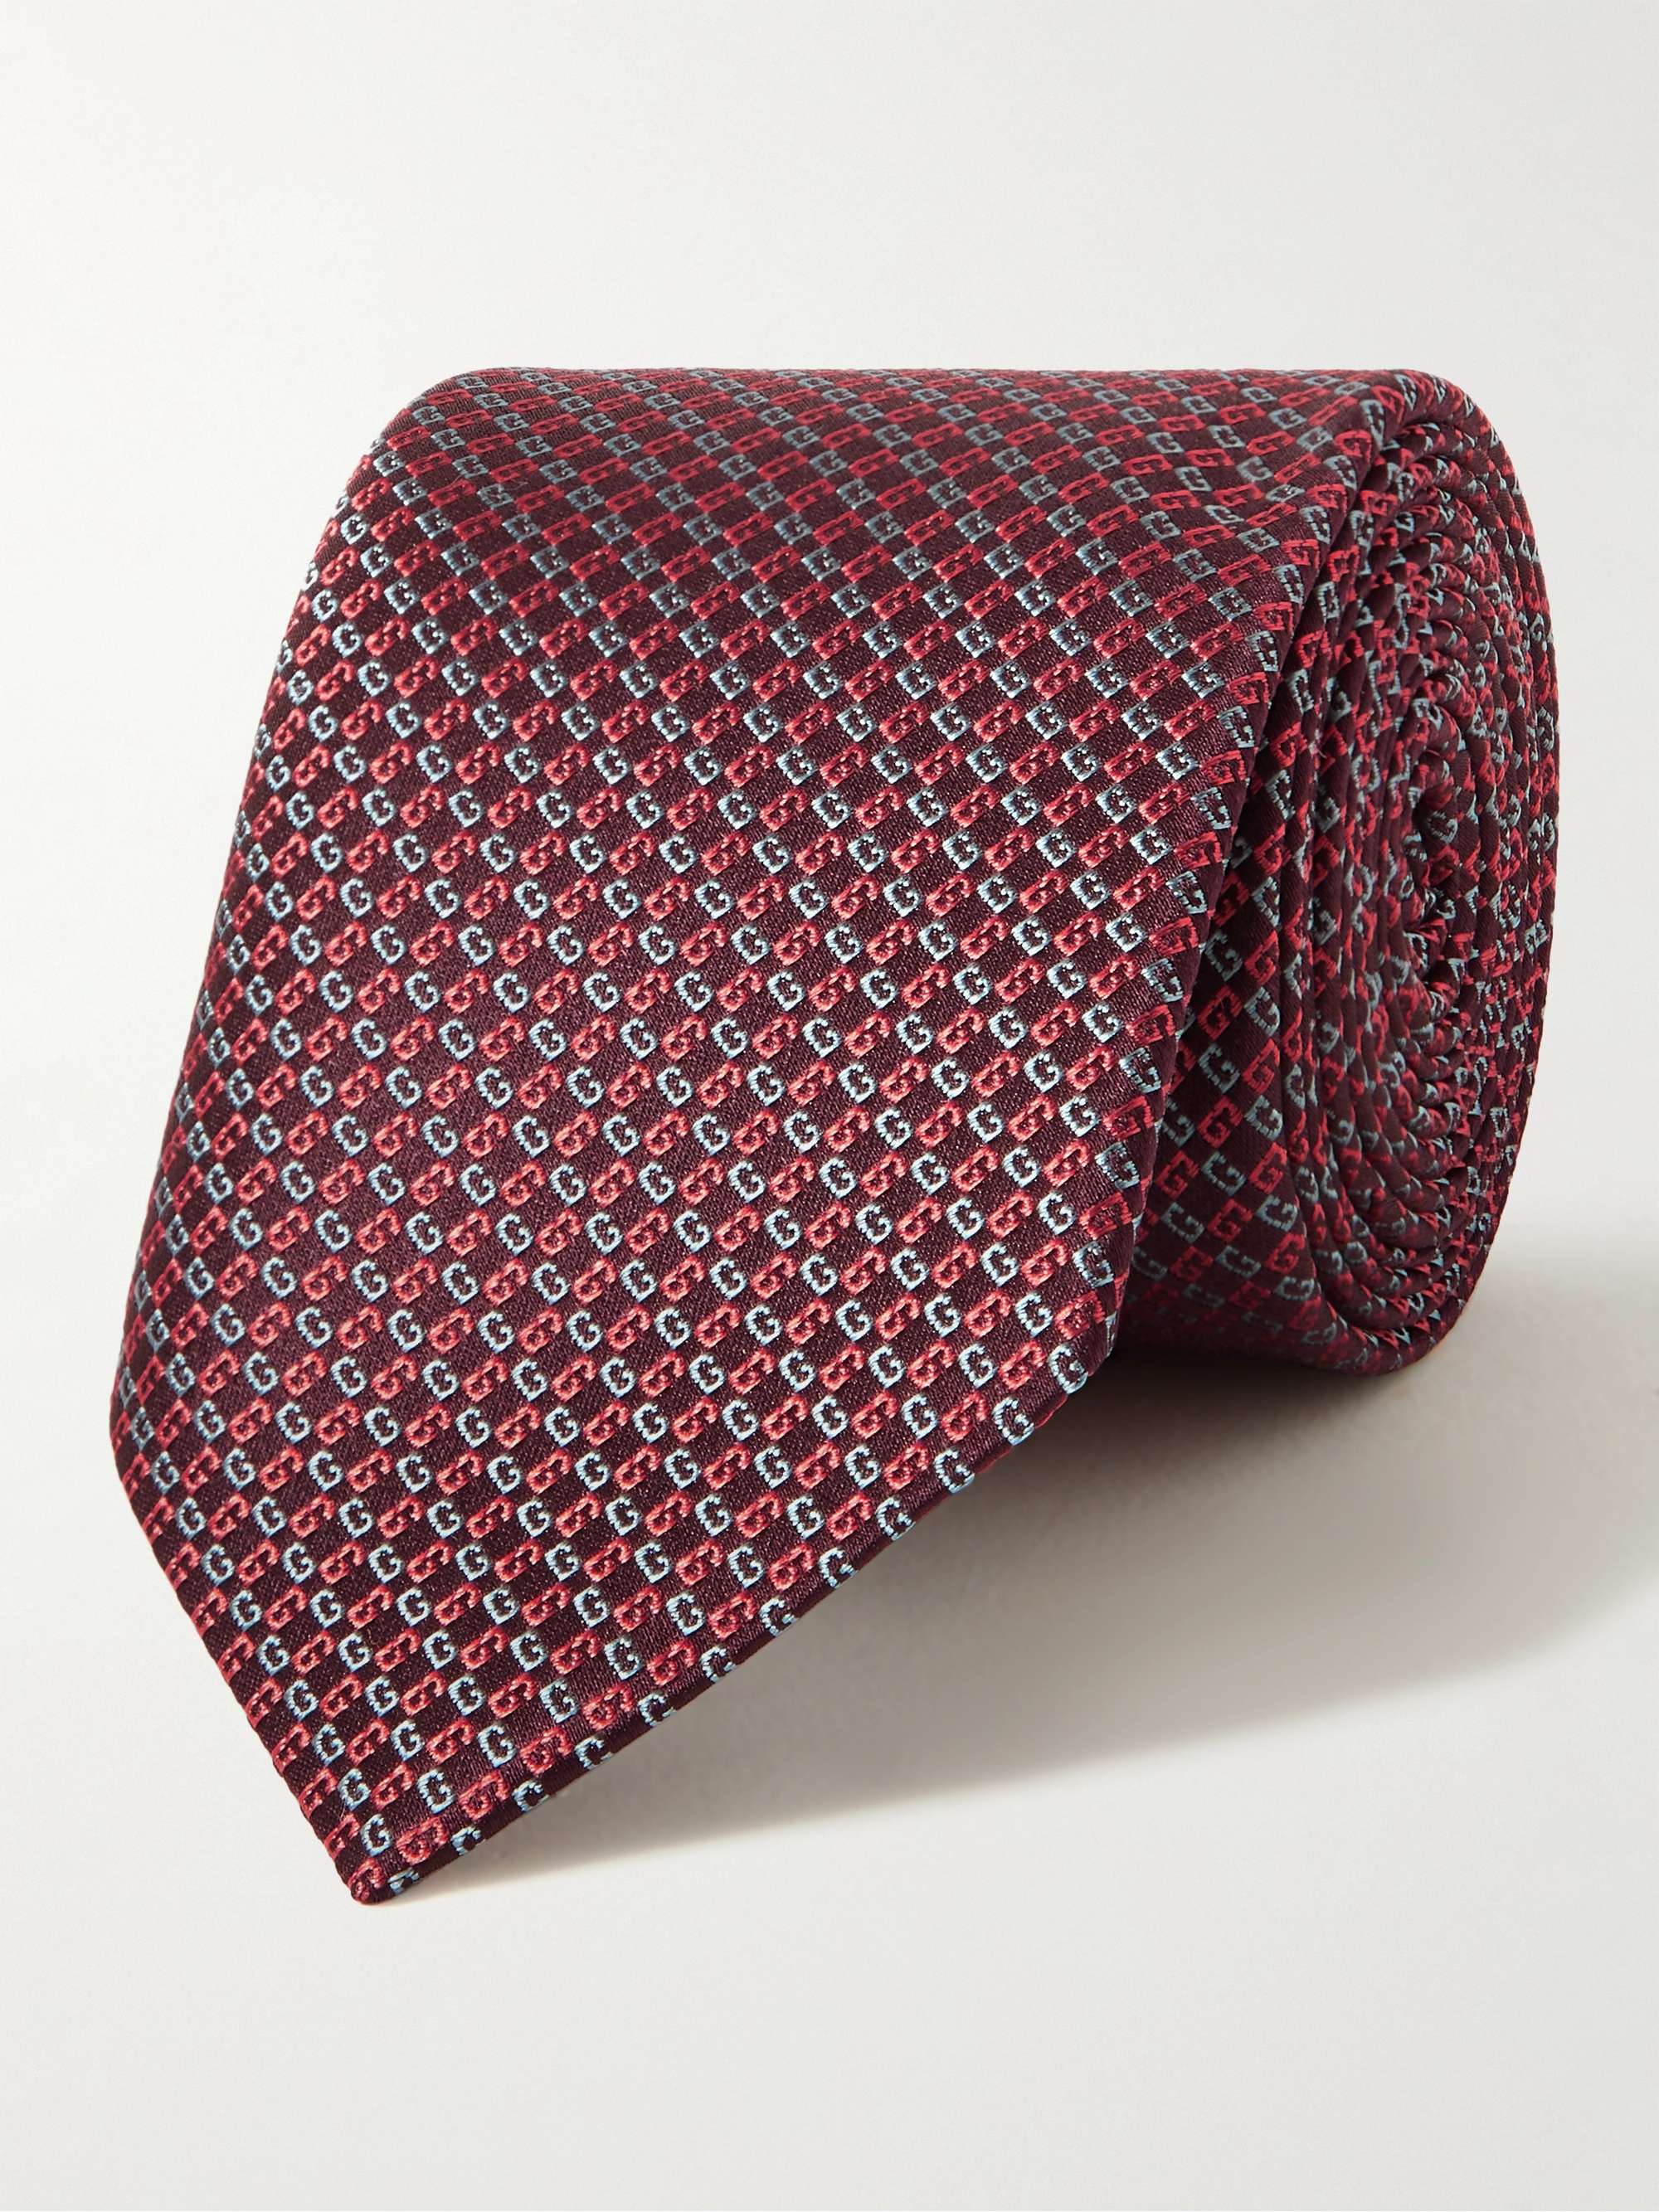 구찌 실크 자가드 넥타이 (선물 추천) Gucci 7cm Logo-Jacquard Silk Tie,Red